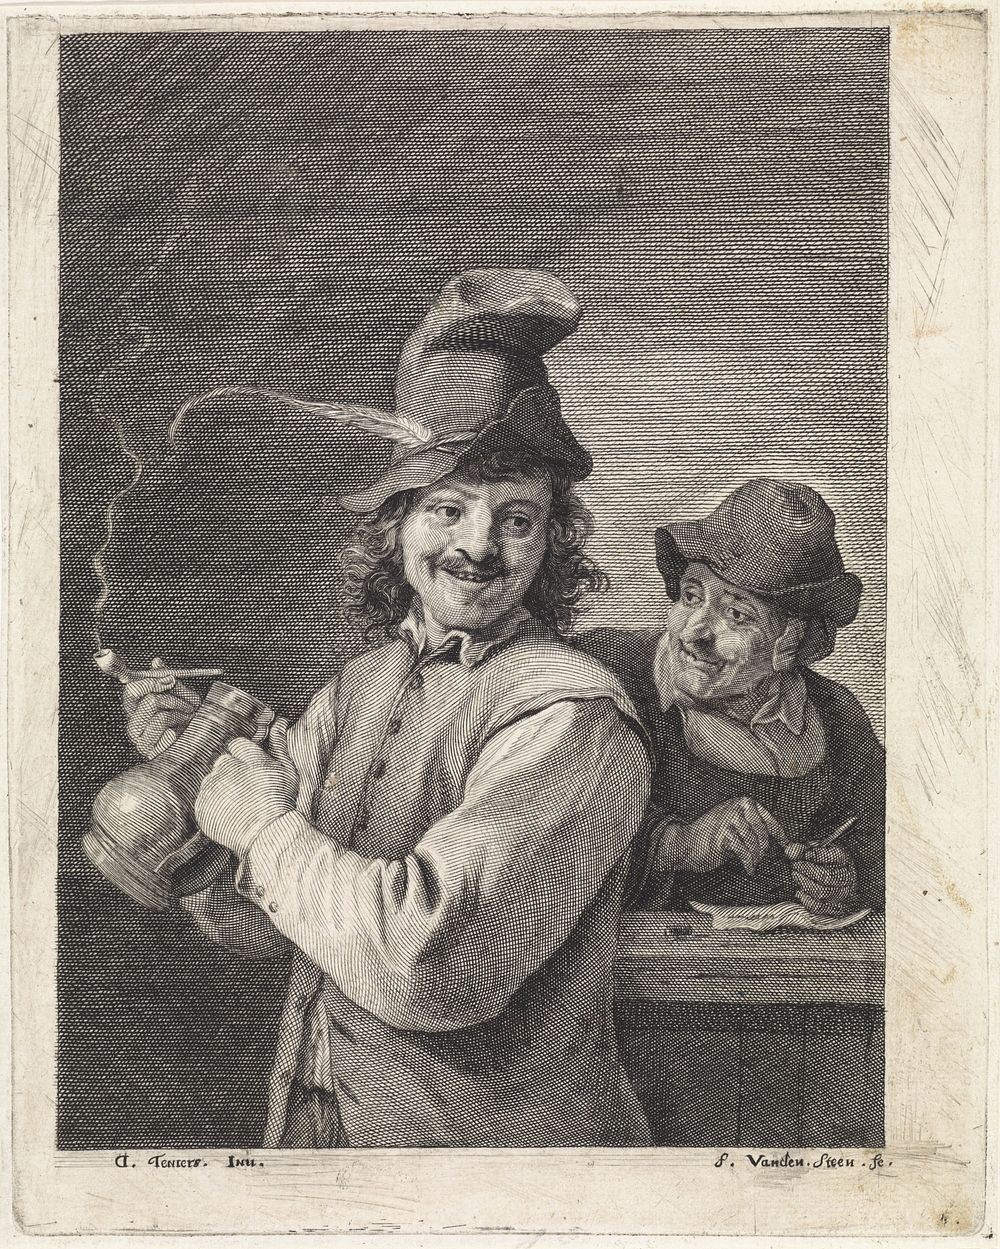 Boer met kruik en pijp (1643 - 1672) by Franciscus van der Steen and David Teniers